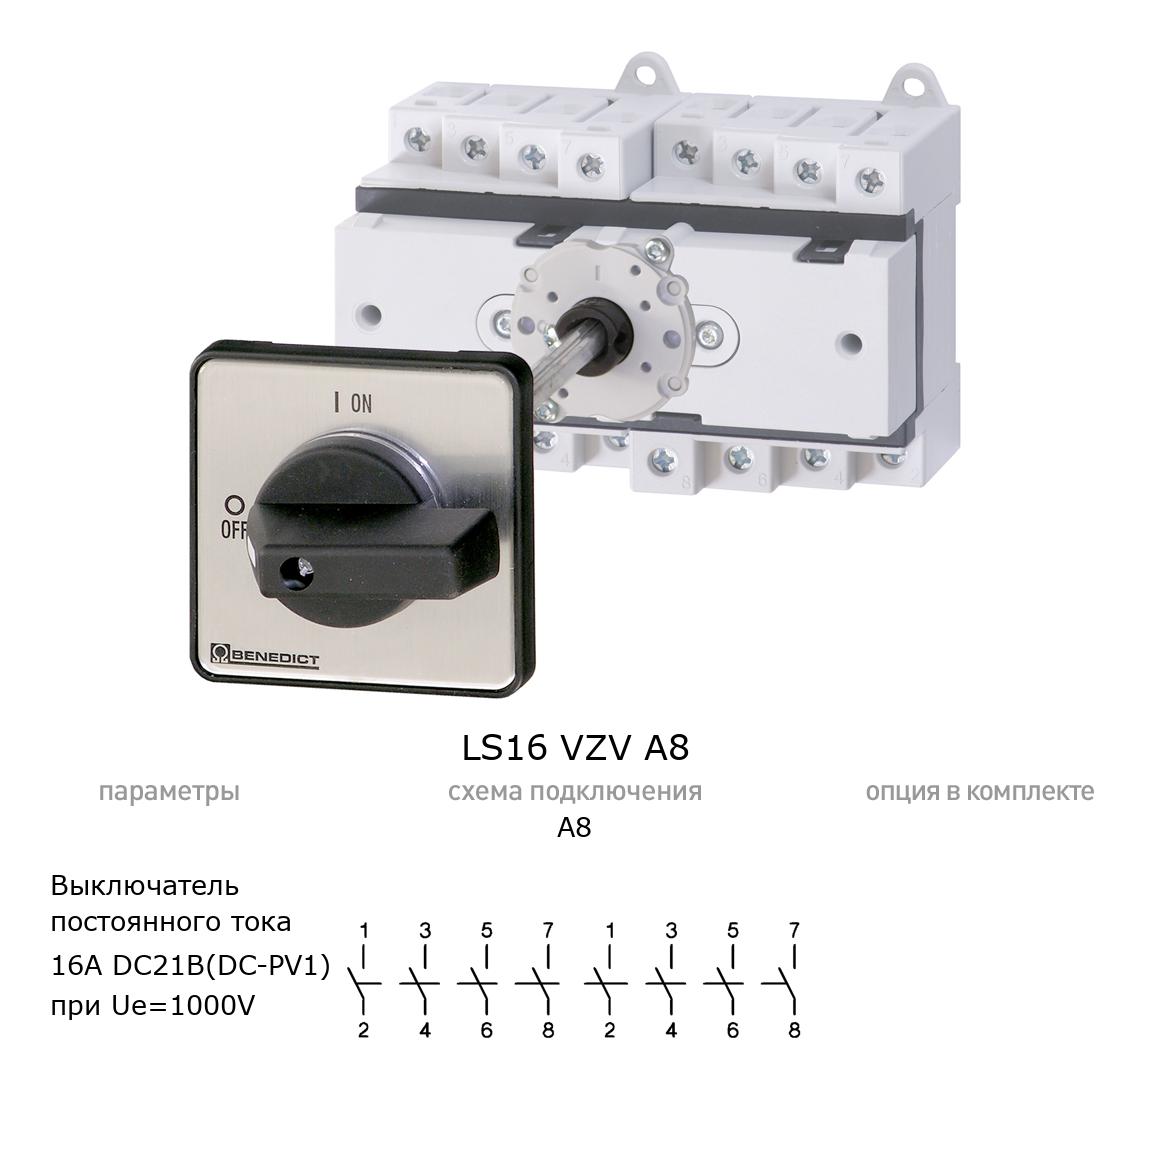 Кулачковый переключатель для постоянного тока (DC) LS16 VZV A8 BENEDICT